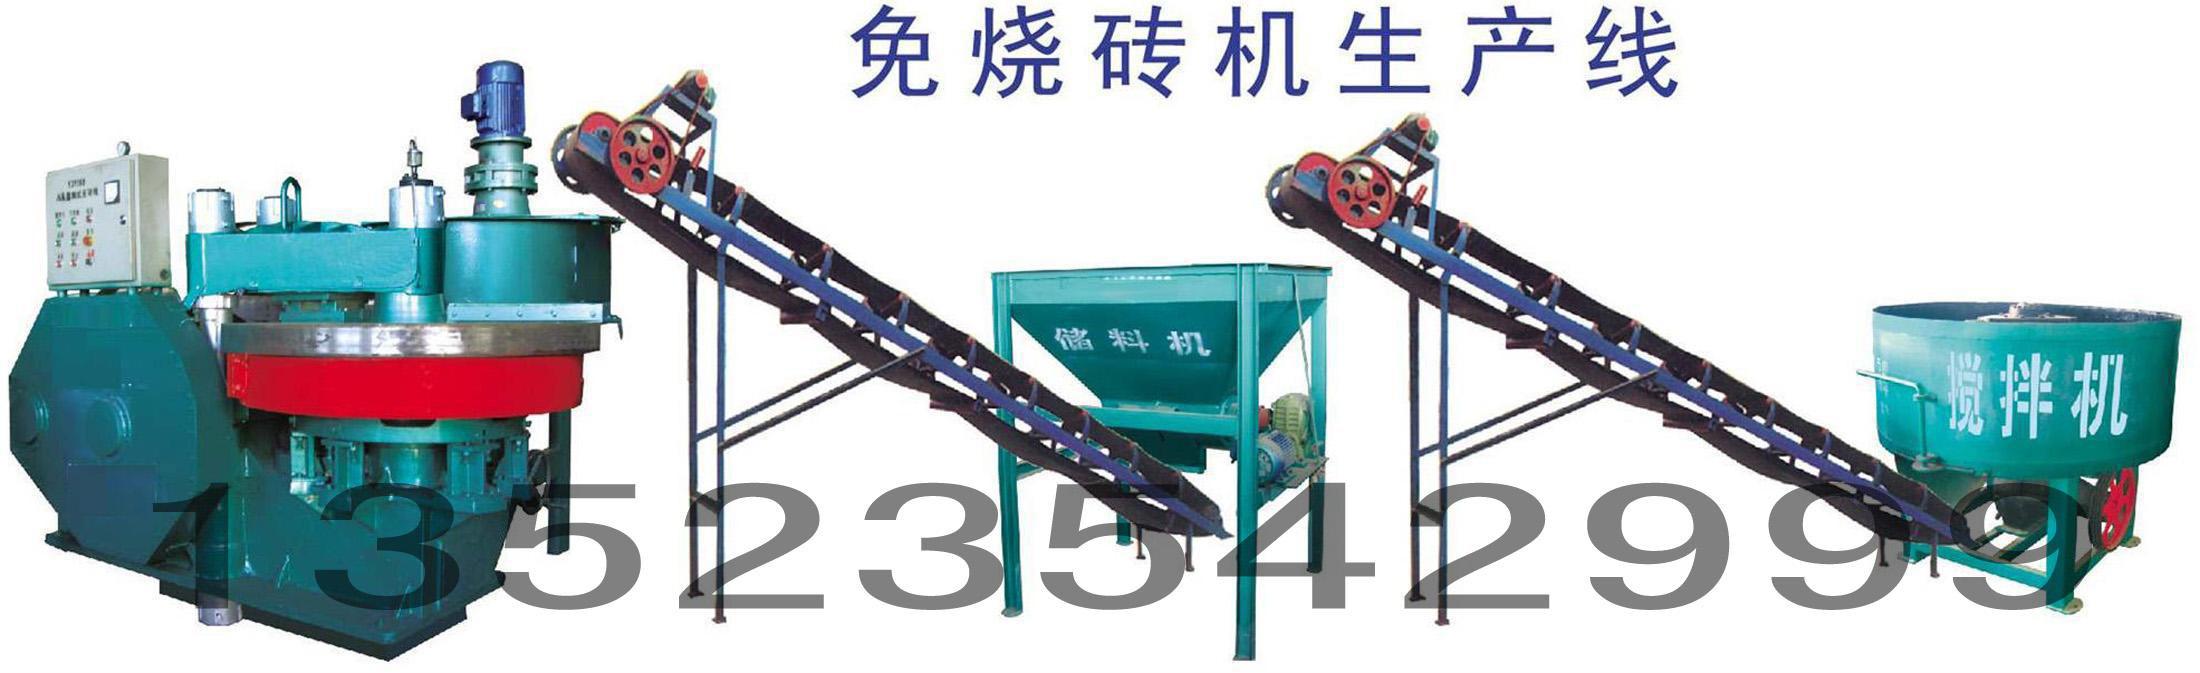 免燒壓磚機生産線(xiàn)